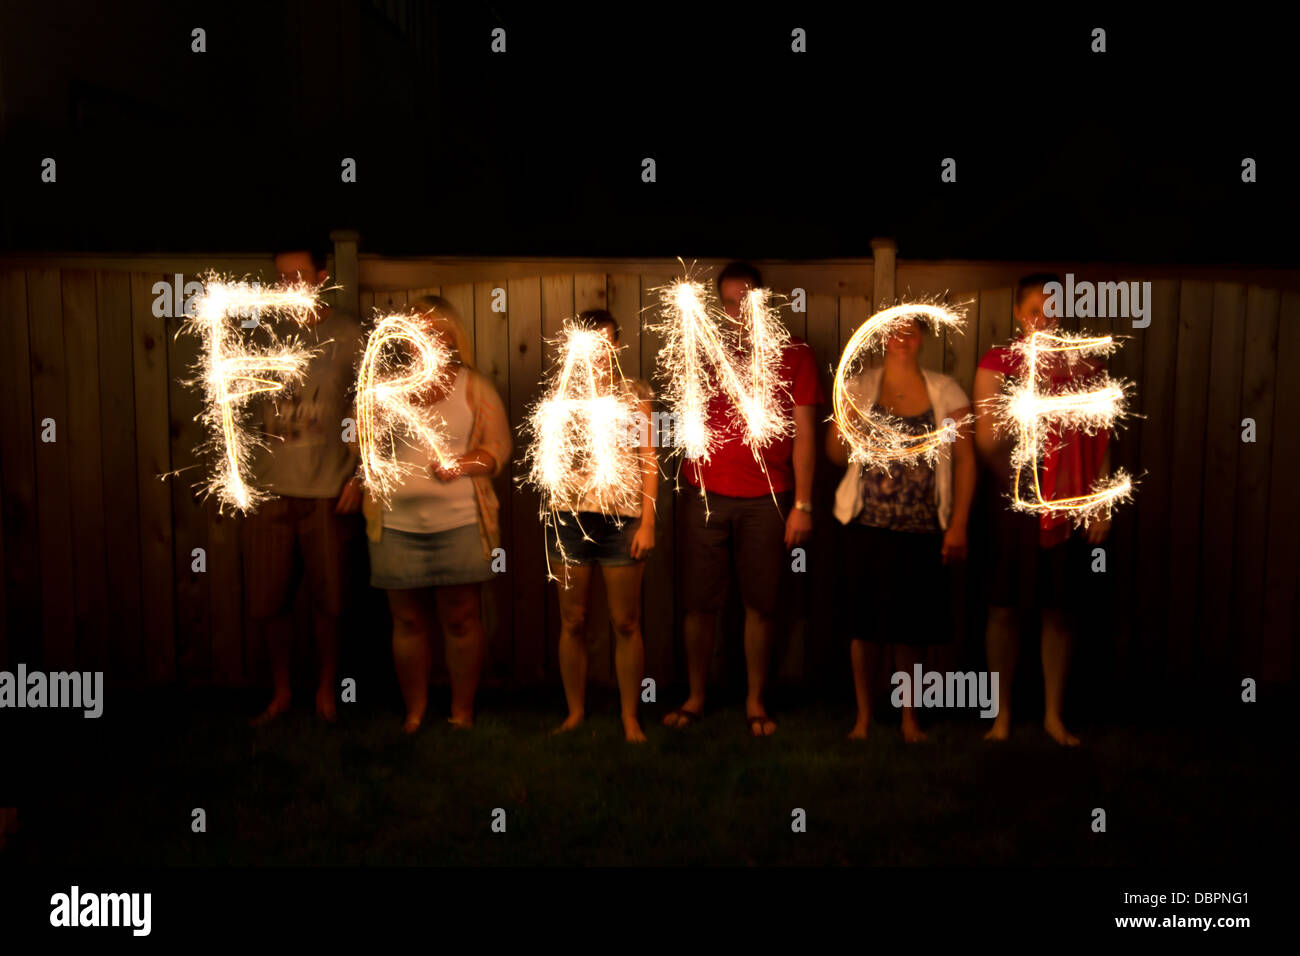 Le mot France dans les étinceleurs time lapse photography Banque D'Images